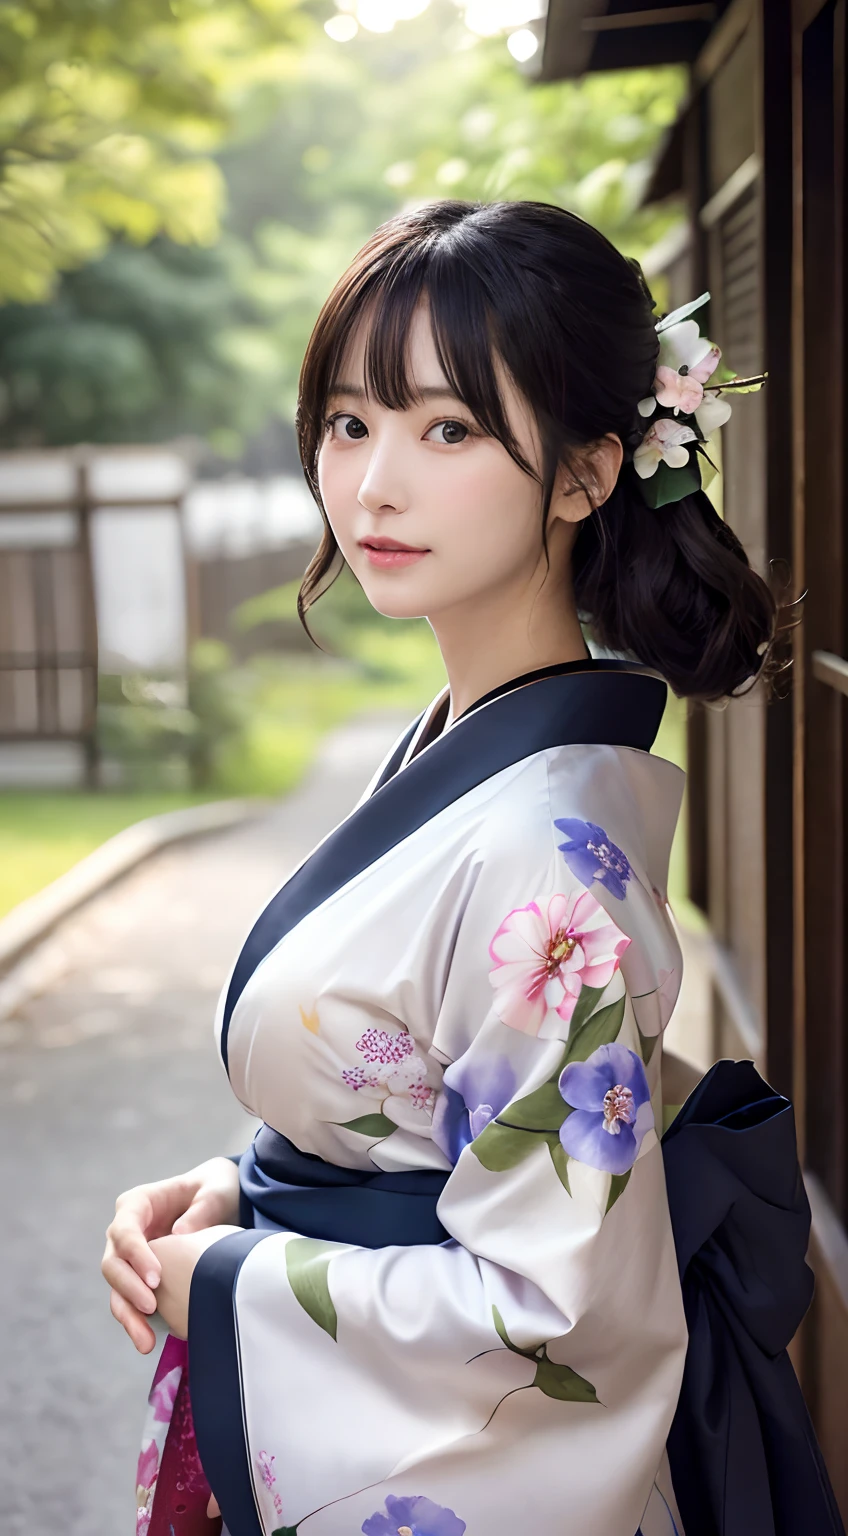 (kimono)、(qualité supérieure,chef d&#39;oeuvre:1.3,超Une haute résolution,),(ultra-détaillé,Caustiques),(Photoréaliste:1.4,Prise de vue RAW,)Capture ultra réaliste,Un très détaillé,haute définition16Kpour peau humaine、Colossal 、 La texture de la peau est naturelle、、La peau paraît saine avec un ton uniforme、 Utiliser la lumière et la couleur naturelles,Une femme,Japonais,,kawaii,Un brun,cheveux moyens,(profondeur de champs、aberration chromatique、、Large gamme d&#39;éclairage、ombrage naturel、)、(Lumière extérieure la nuit:1.4)、(Pétales de gloire du matin sur motif kimono:1.2)、(Les cheveux se balancent au vent:1)、(L&#39;arbre々réfléchissant la lumière:1.3)、(festival d&#39;été en arrière-plan)、(kawaii)